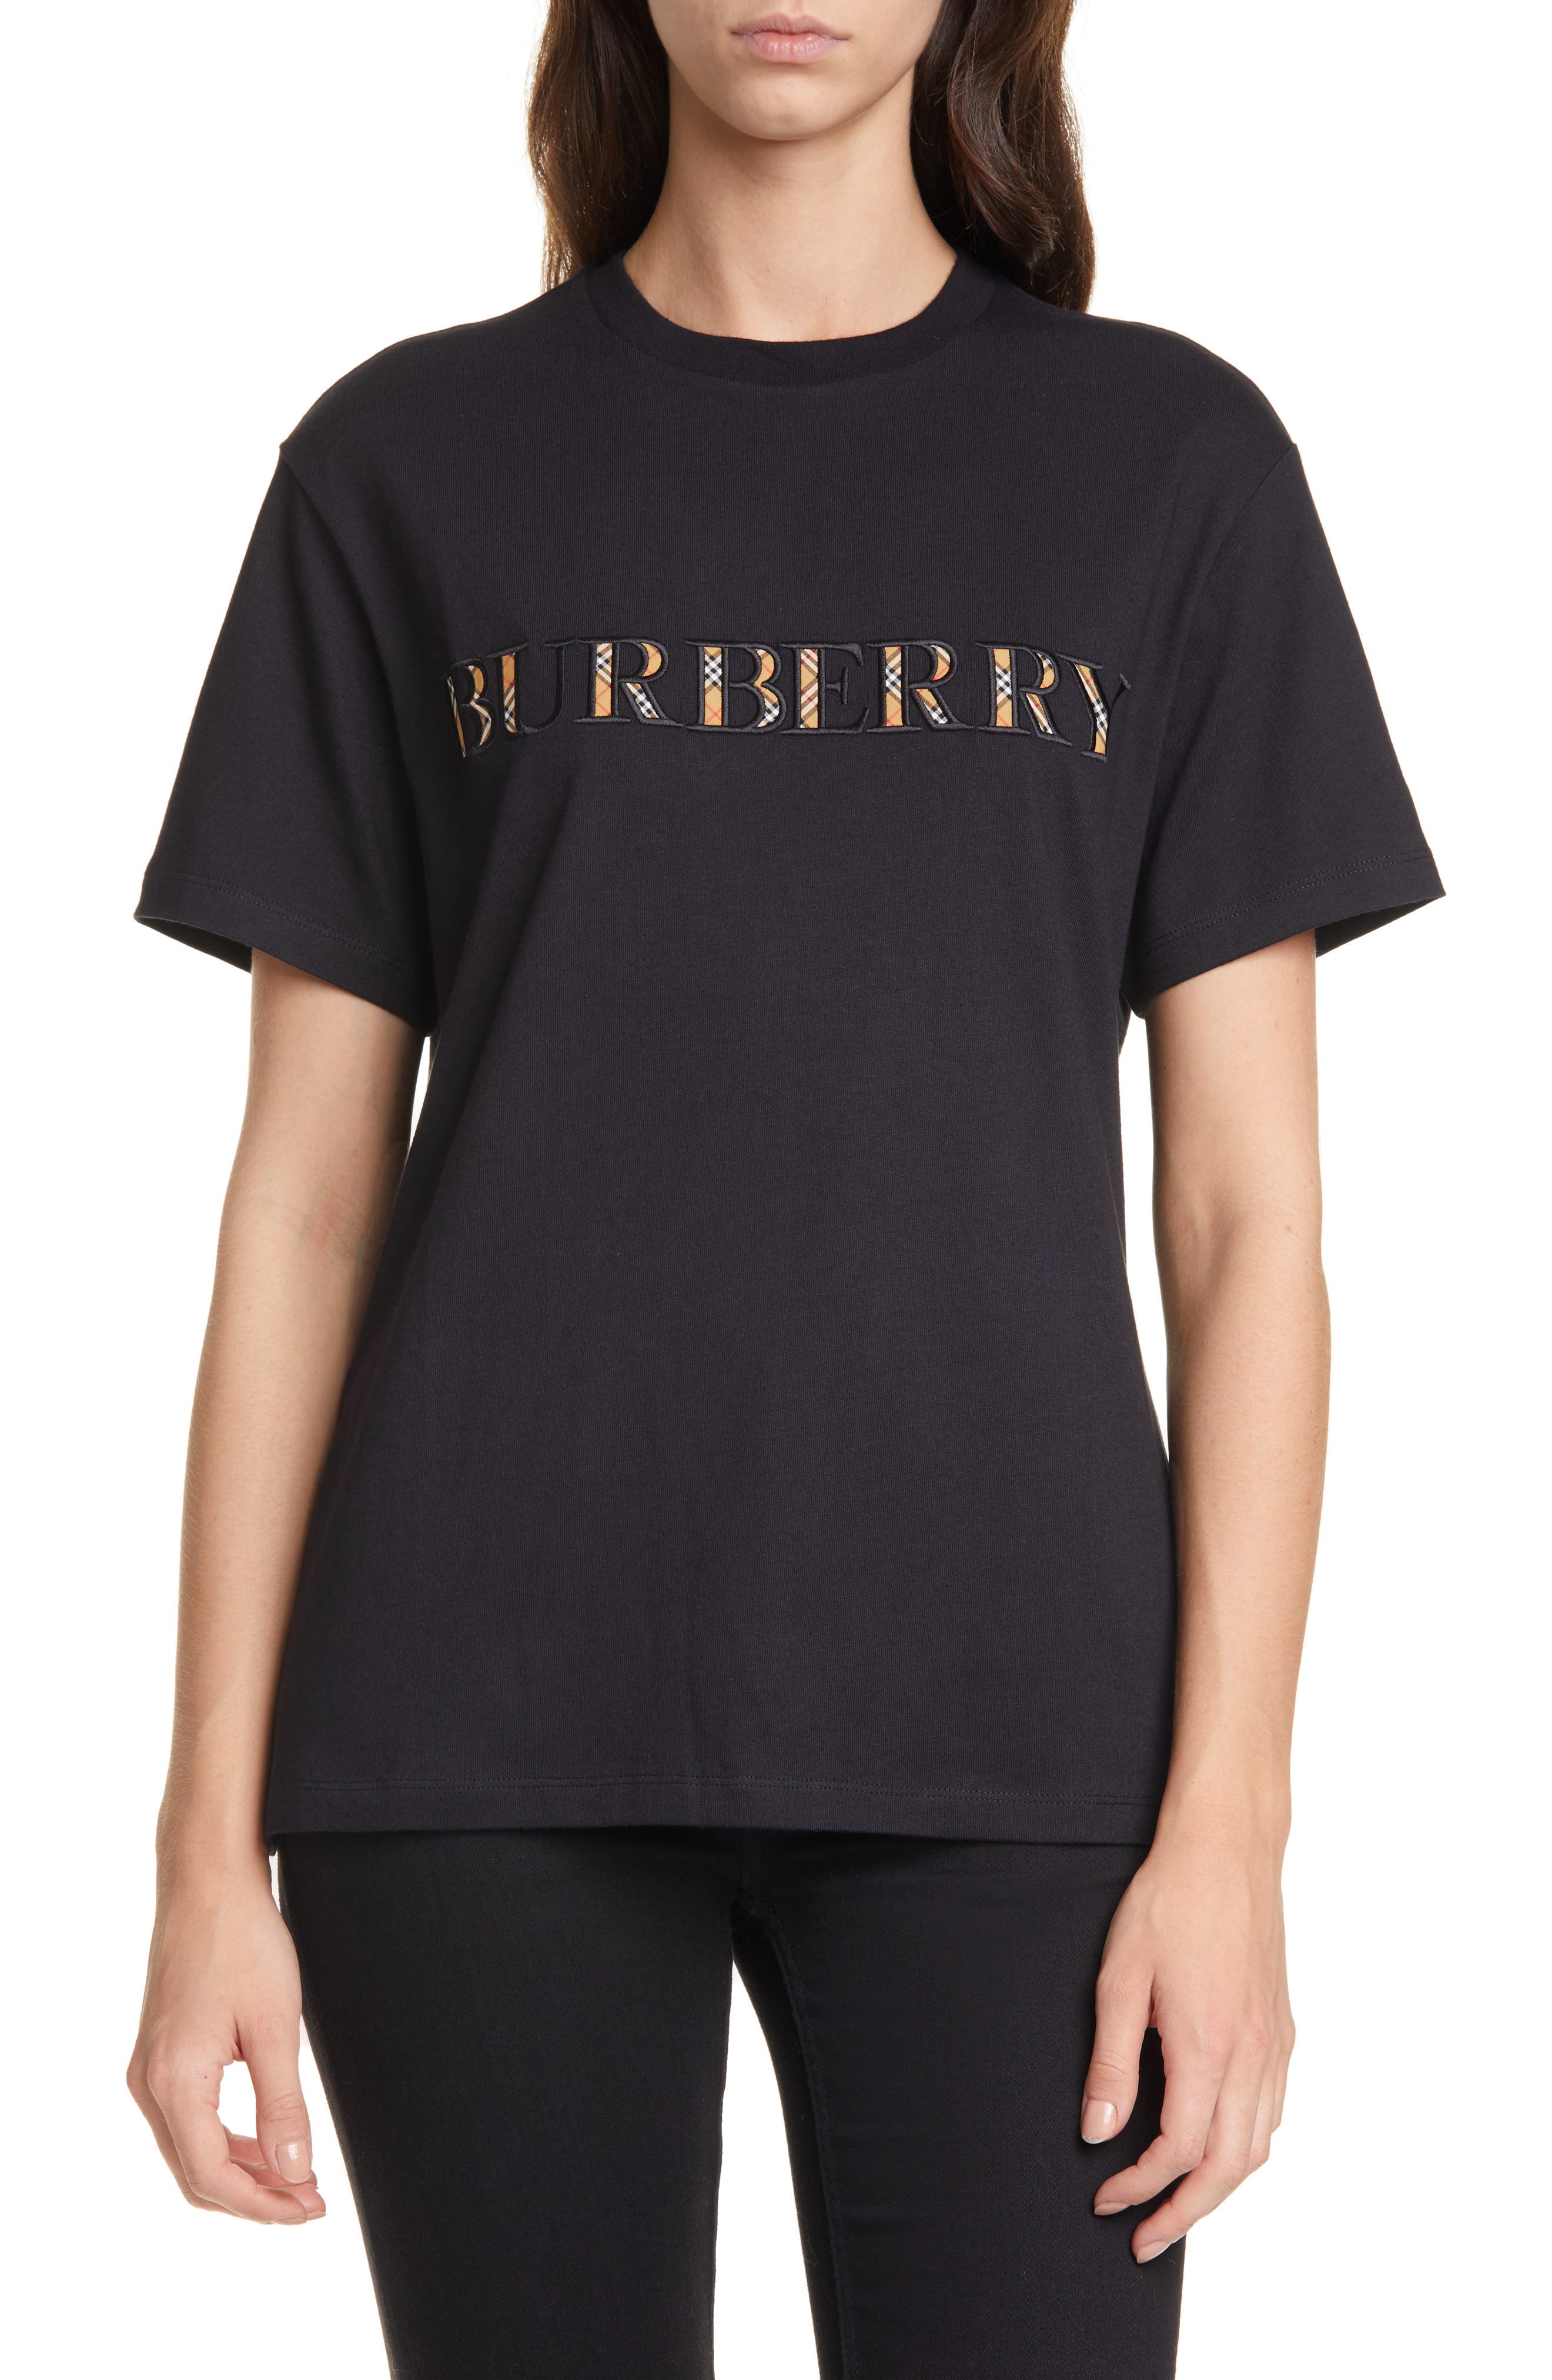 burberry check logo t shirt